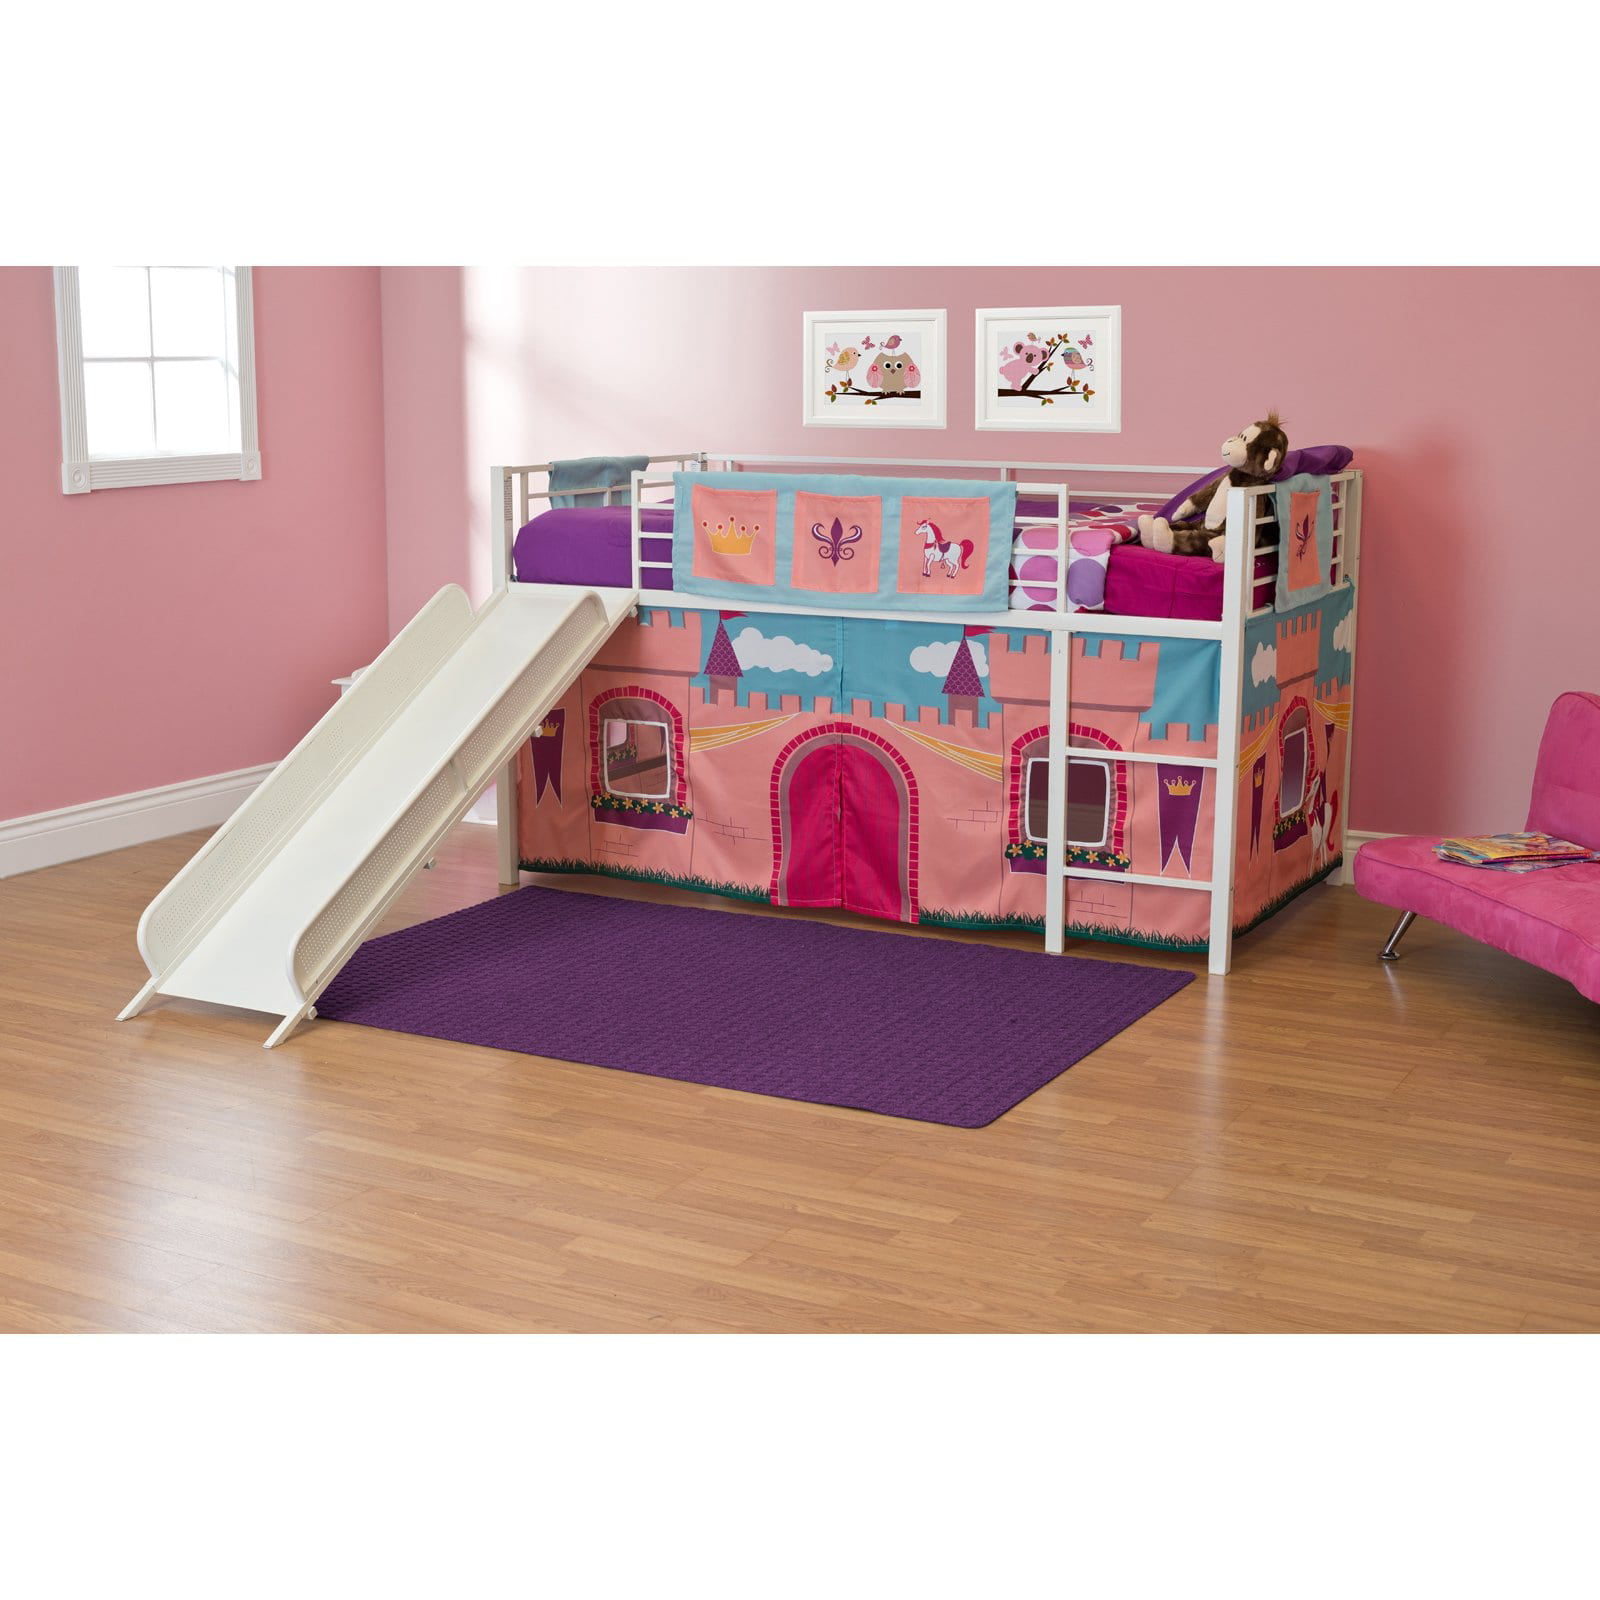 Maxwood Jackpot Princess Grey Pink, Princess Bunk Beds With Stairs